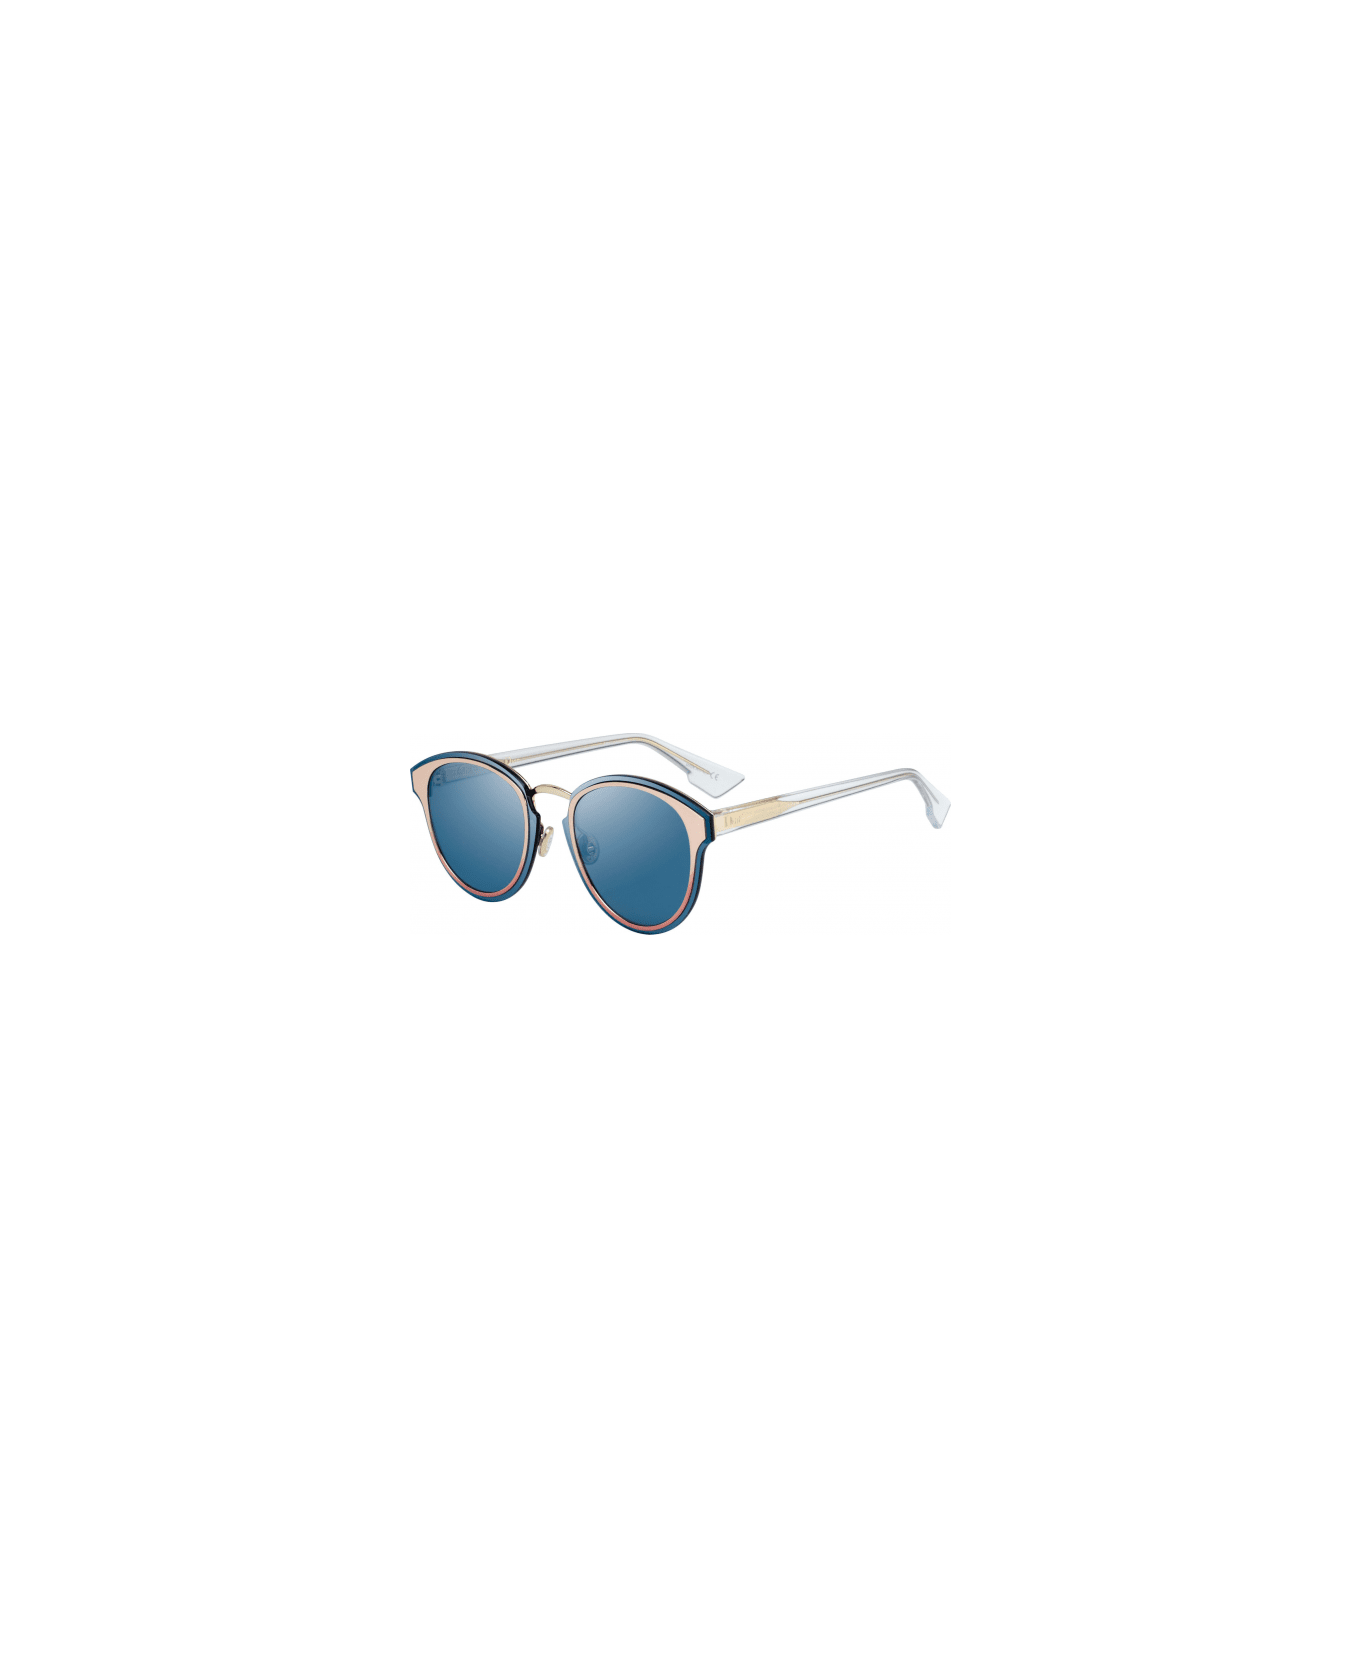 Dior Eyewear Sunglasses - Oro e bianco/Blu specchiato